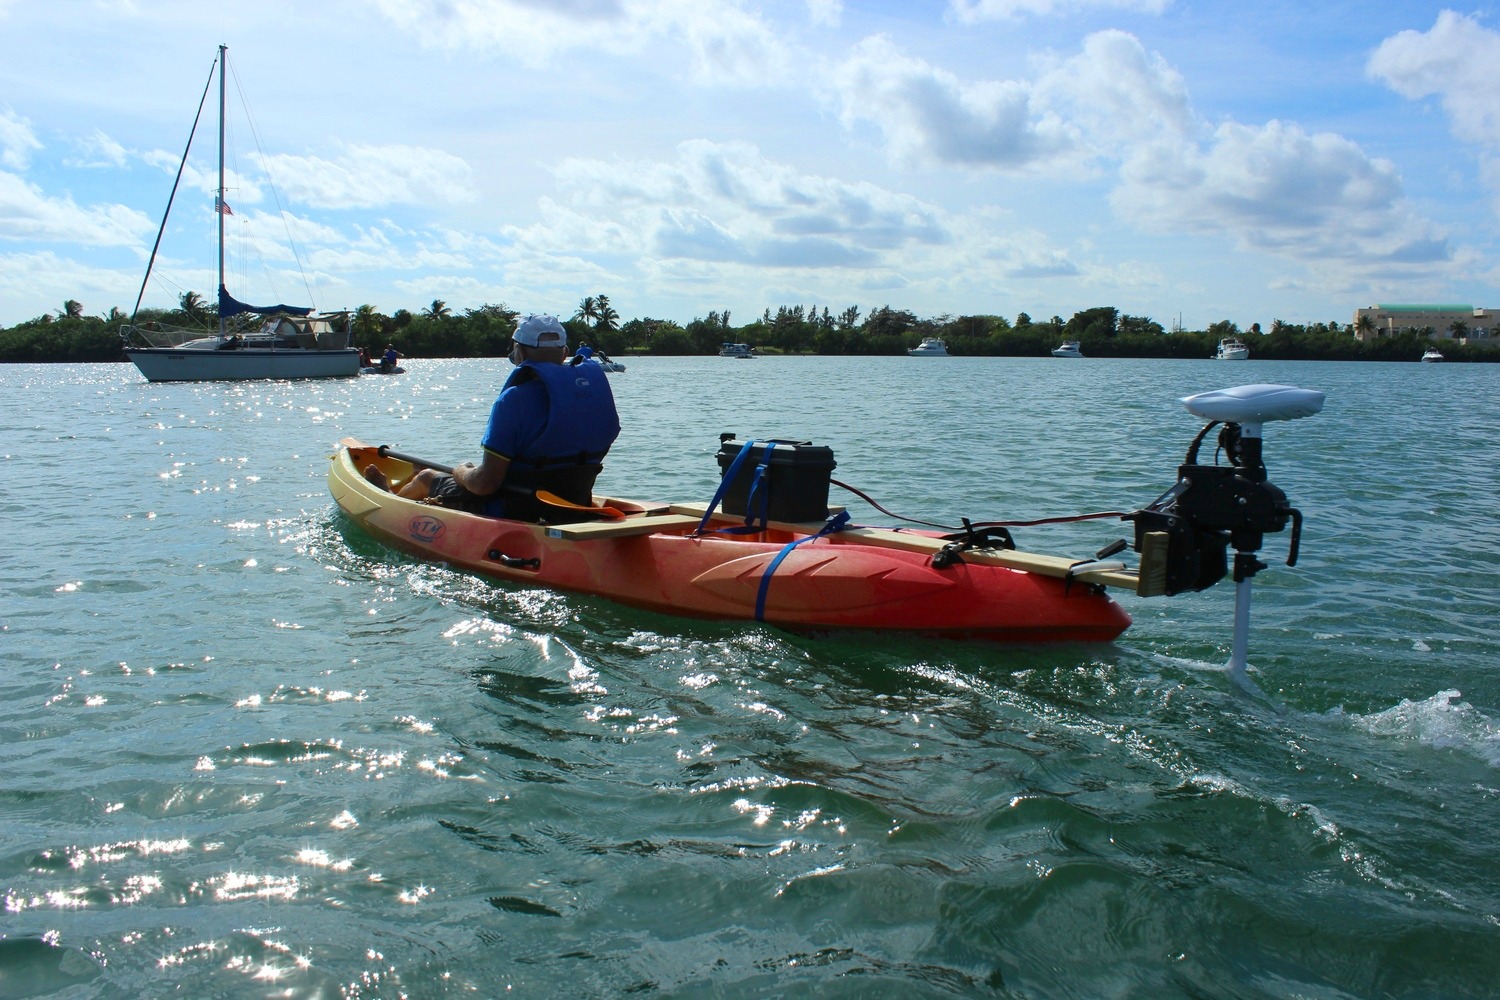 2 seater see through kayak see through kayak, kayaking